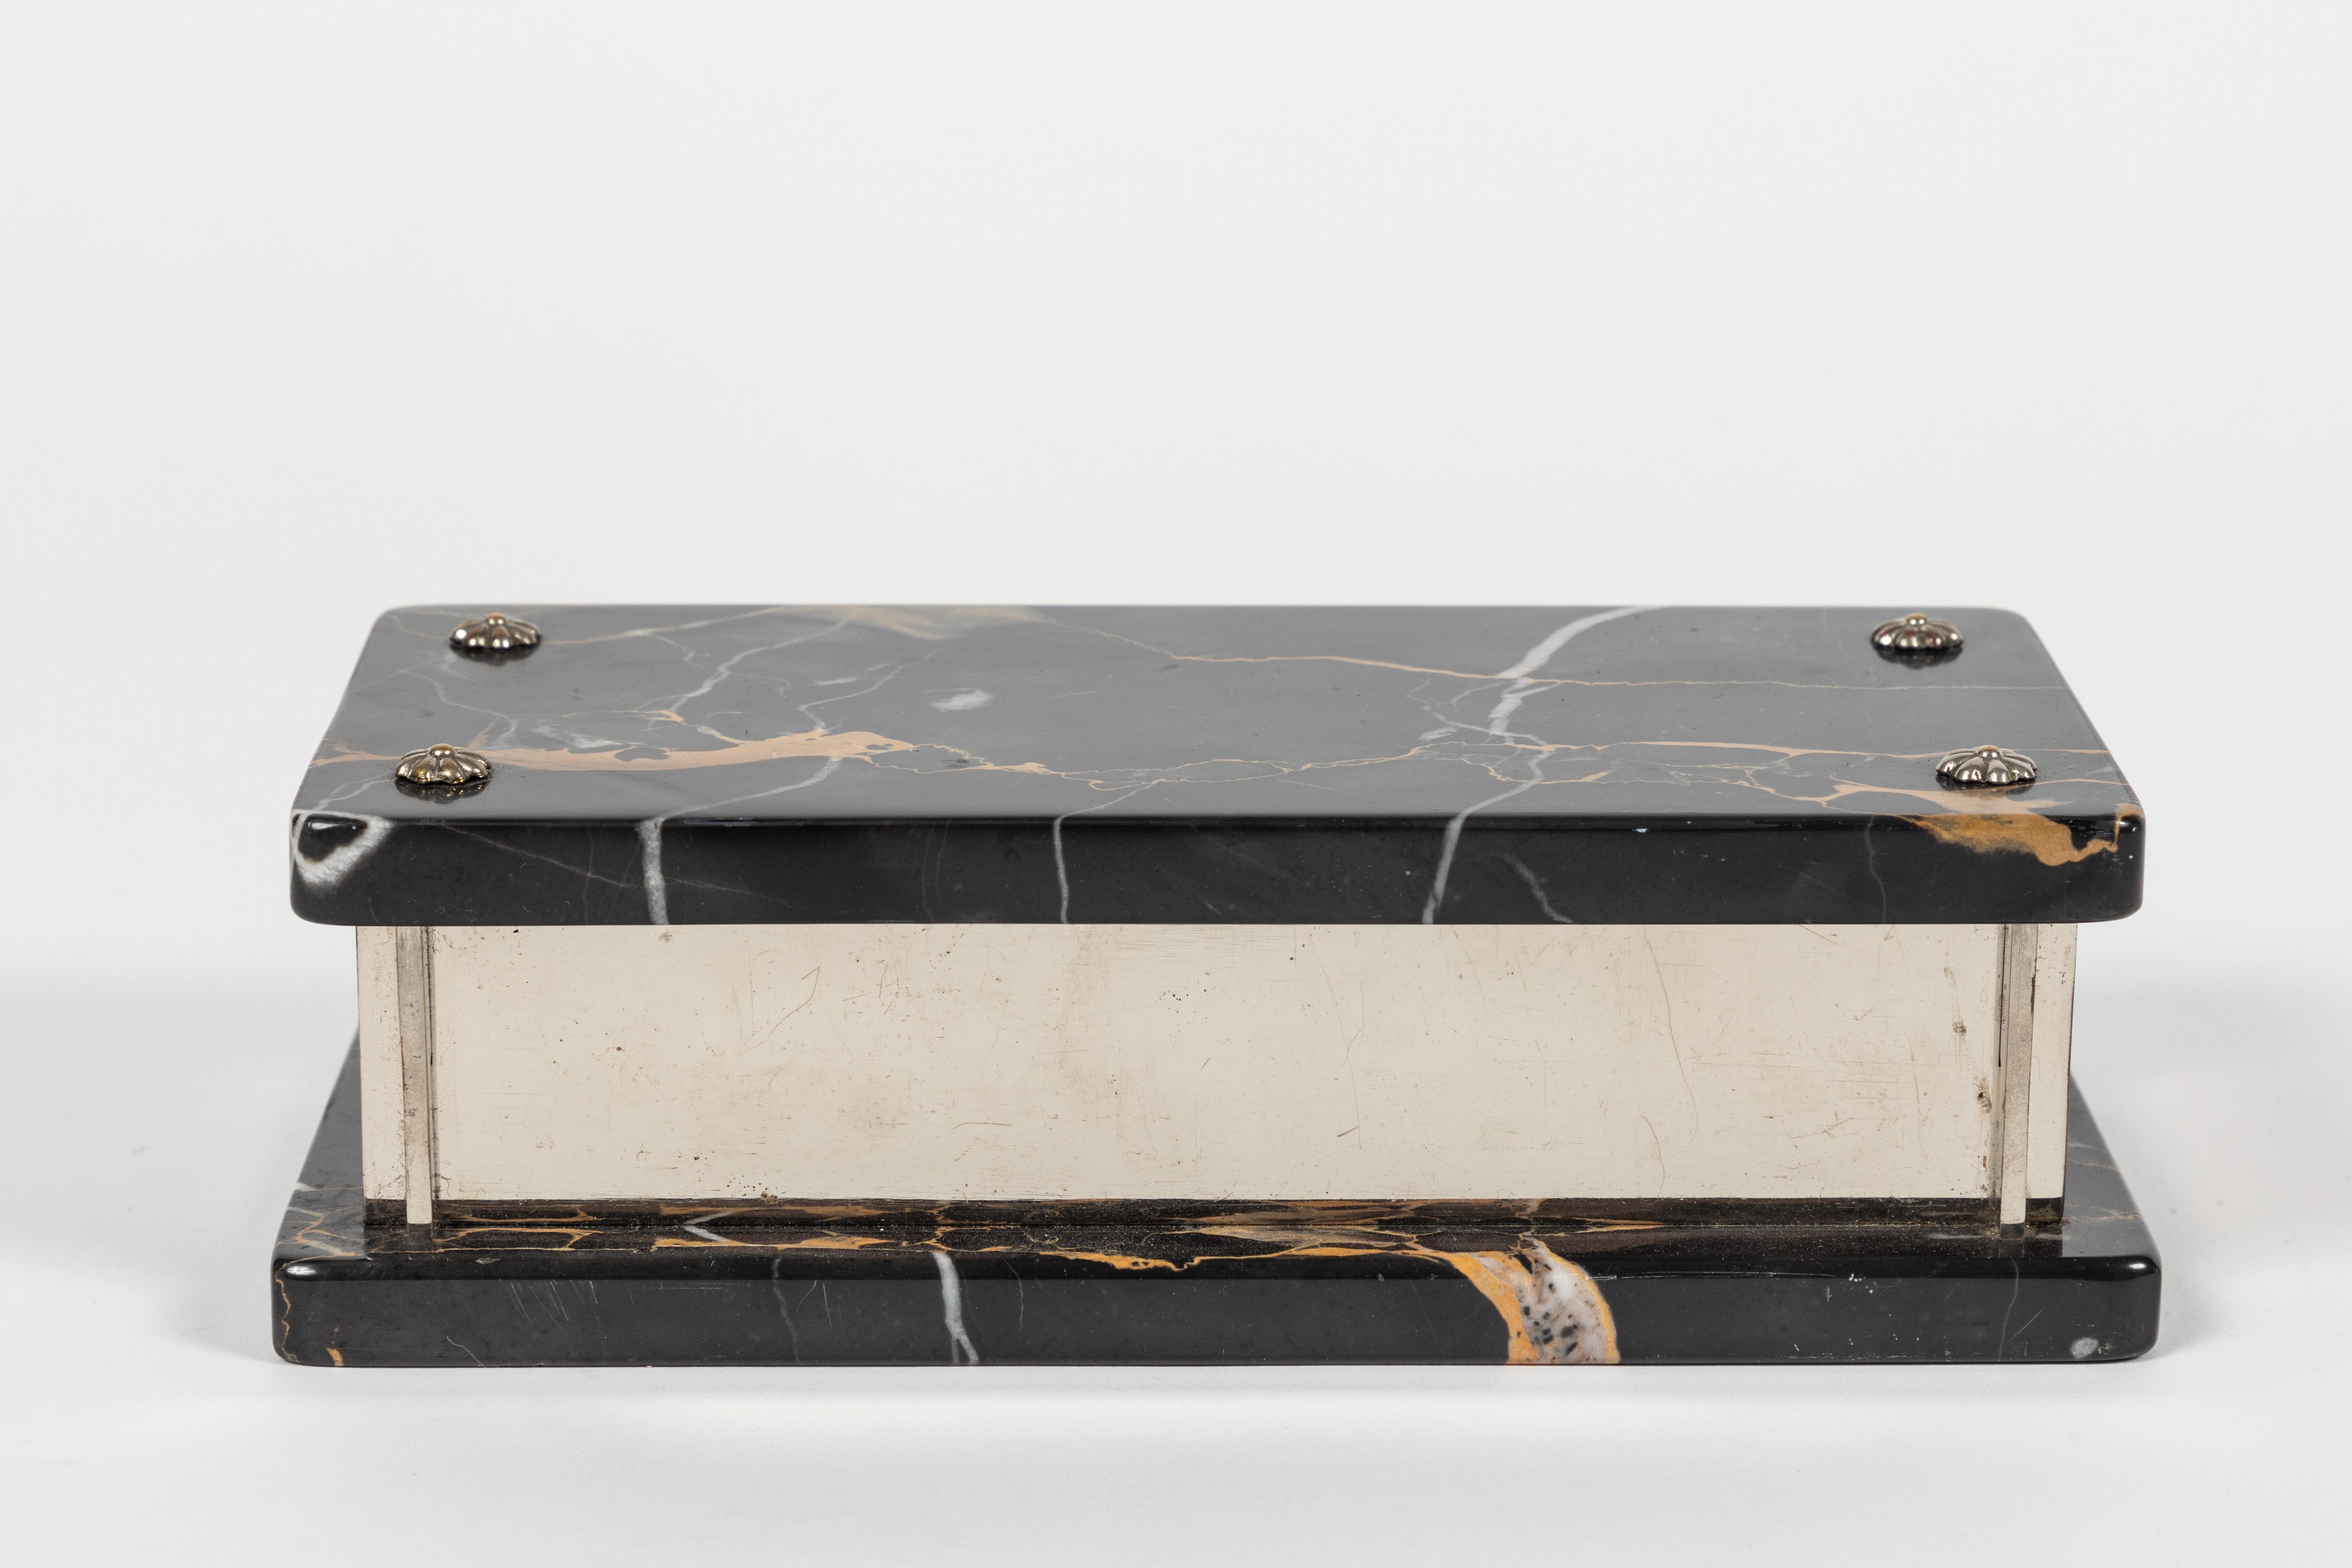 Superschicke Box aus geädertem Marmor und vernickelt. Der Boden und die Oberseite bestehen aus einer 1/2